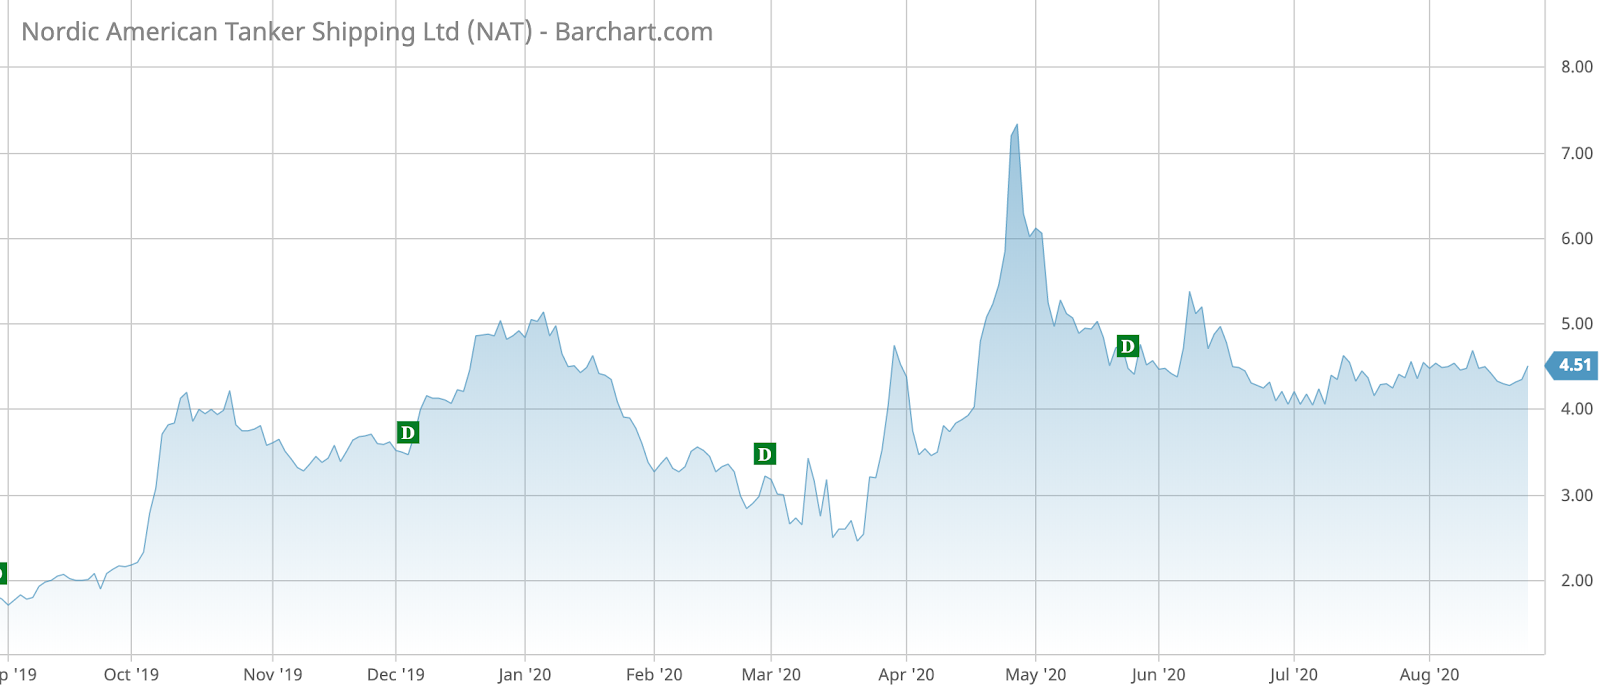 NAT Barchart Interactive Chart 08 26 2020